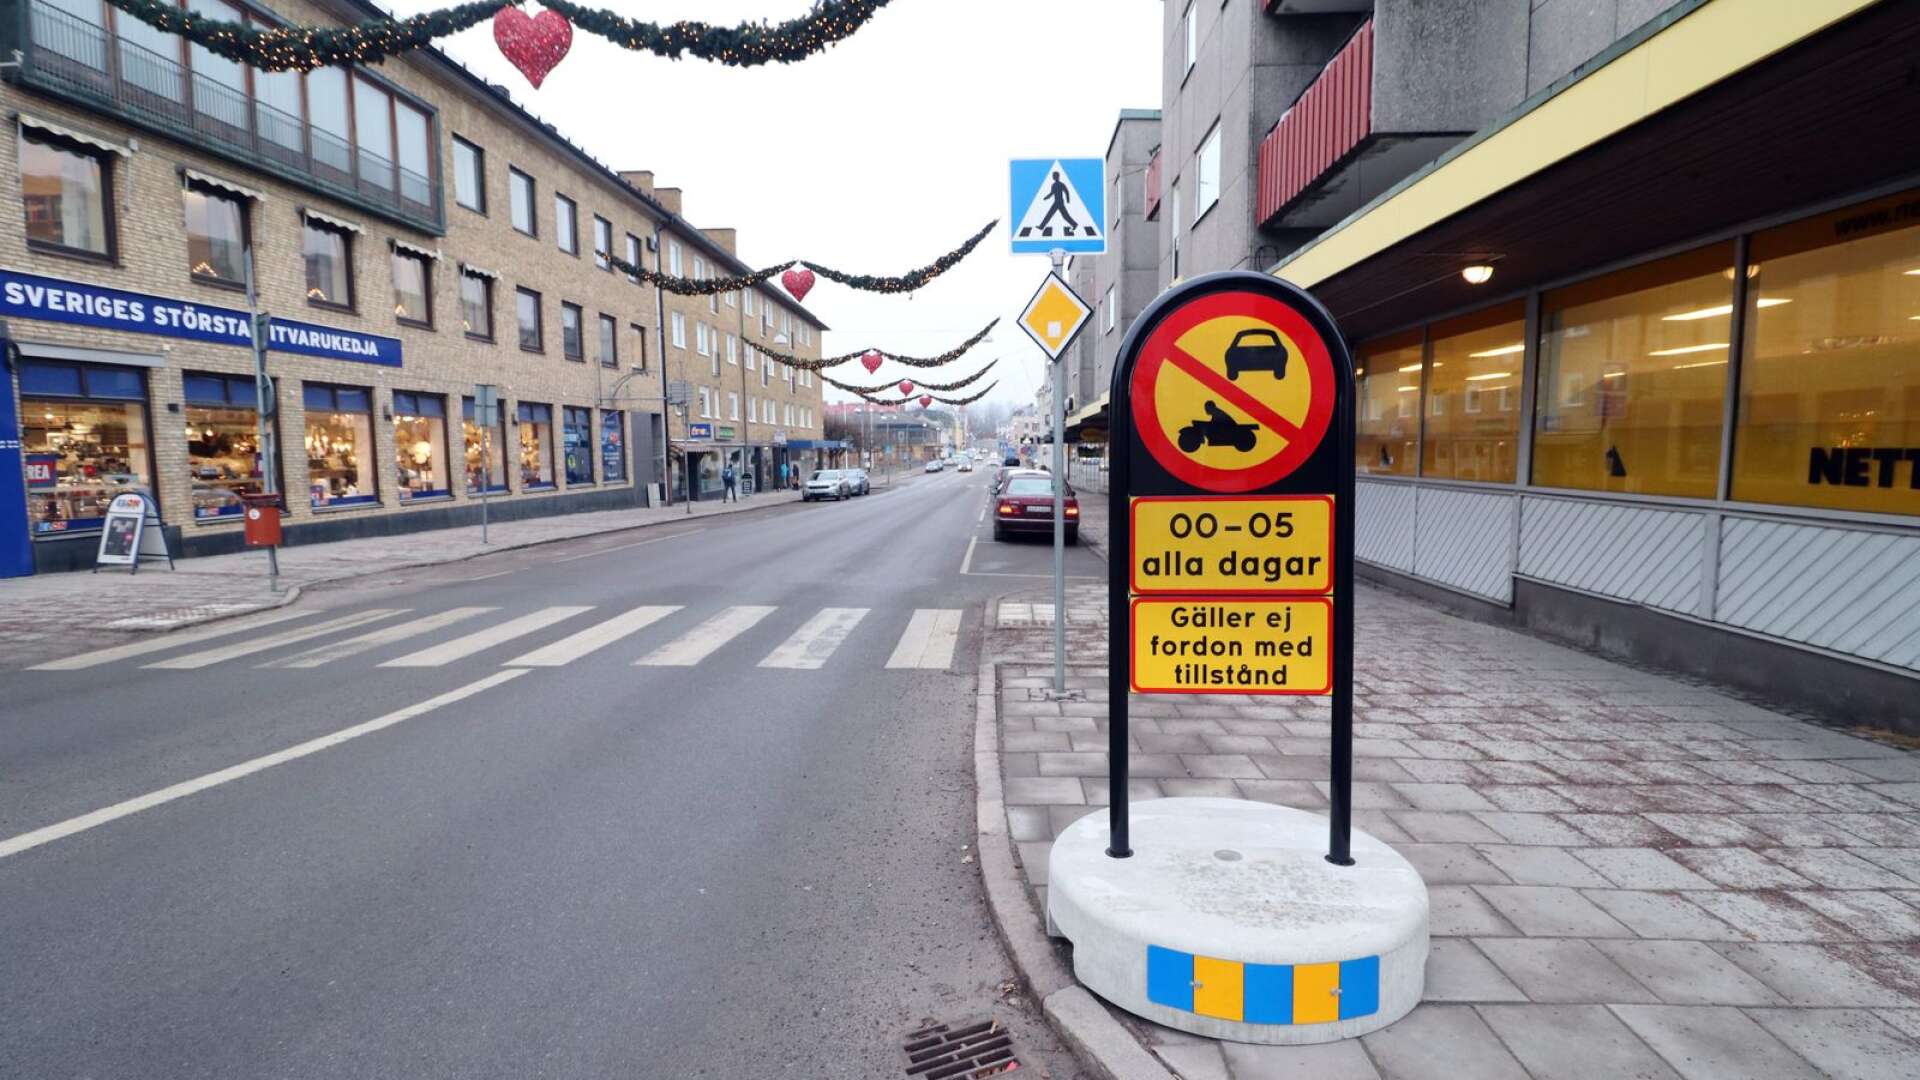 Åmåls kommun planerar att bygga en cykelbana längst Kungsgatan mellan Södra Långgatan och Lunnegatan. 